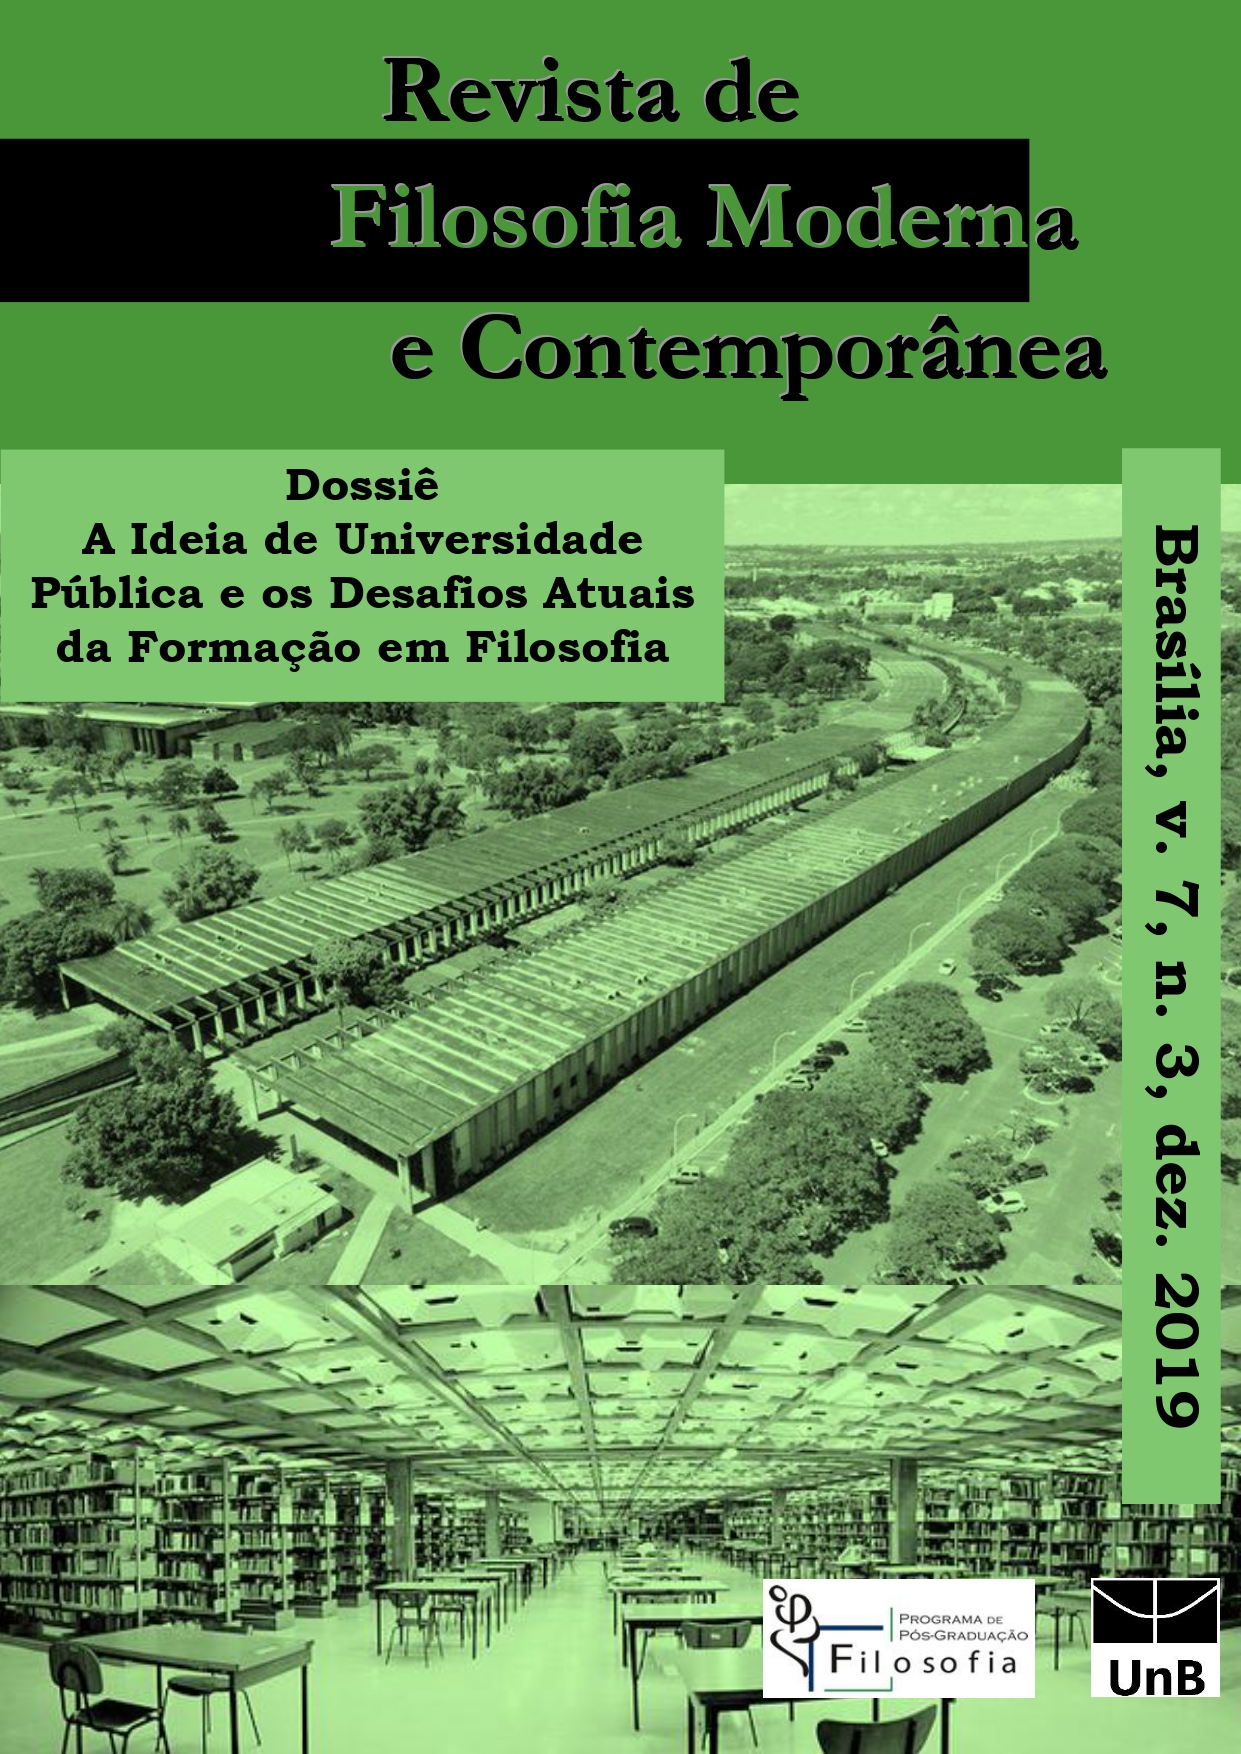 					Visualizar v. 7 n. 3 (2019): Dossiê “A Ideia de Universidade Pública e os Desafios Atuais da Formação em Filosofia”
				